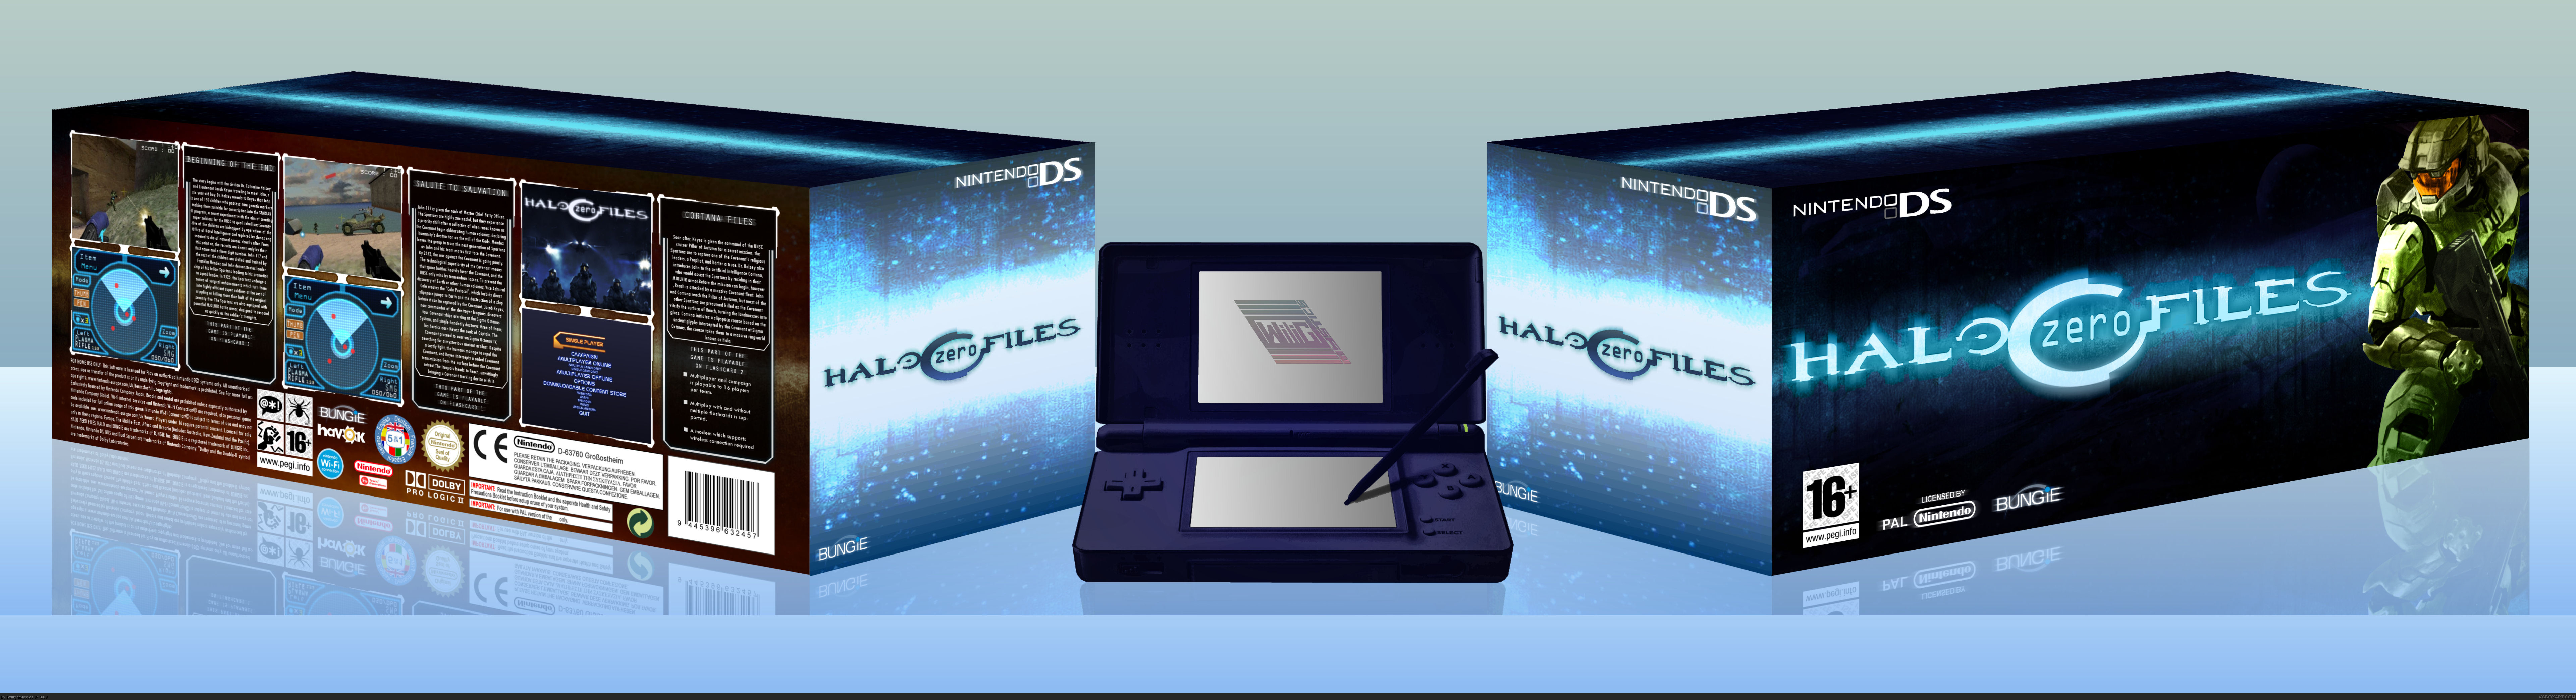 Halo Zero Files box cover